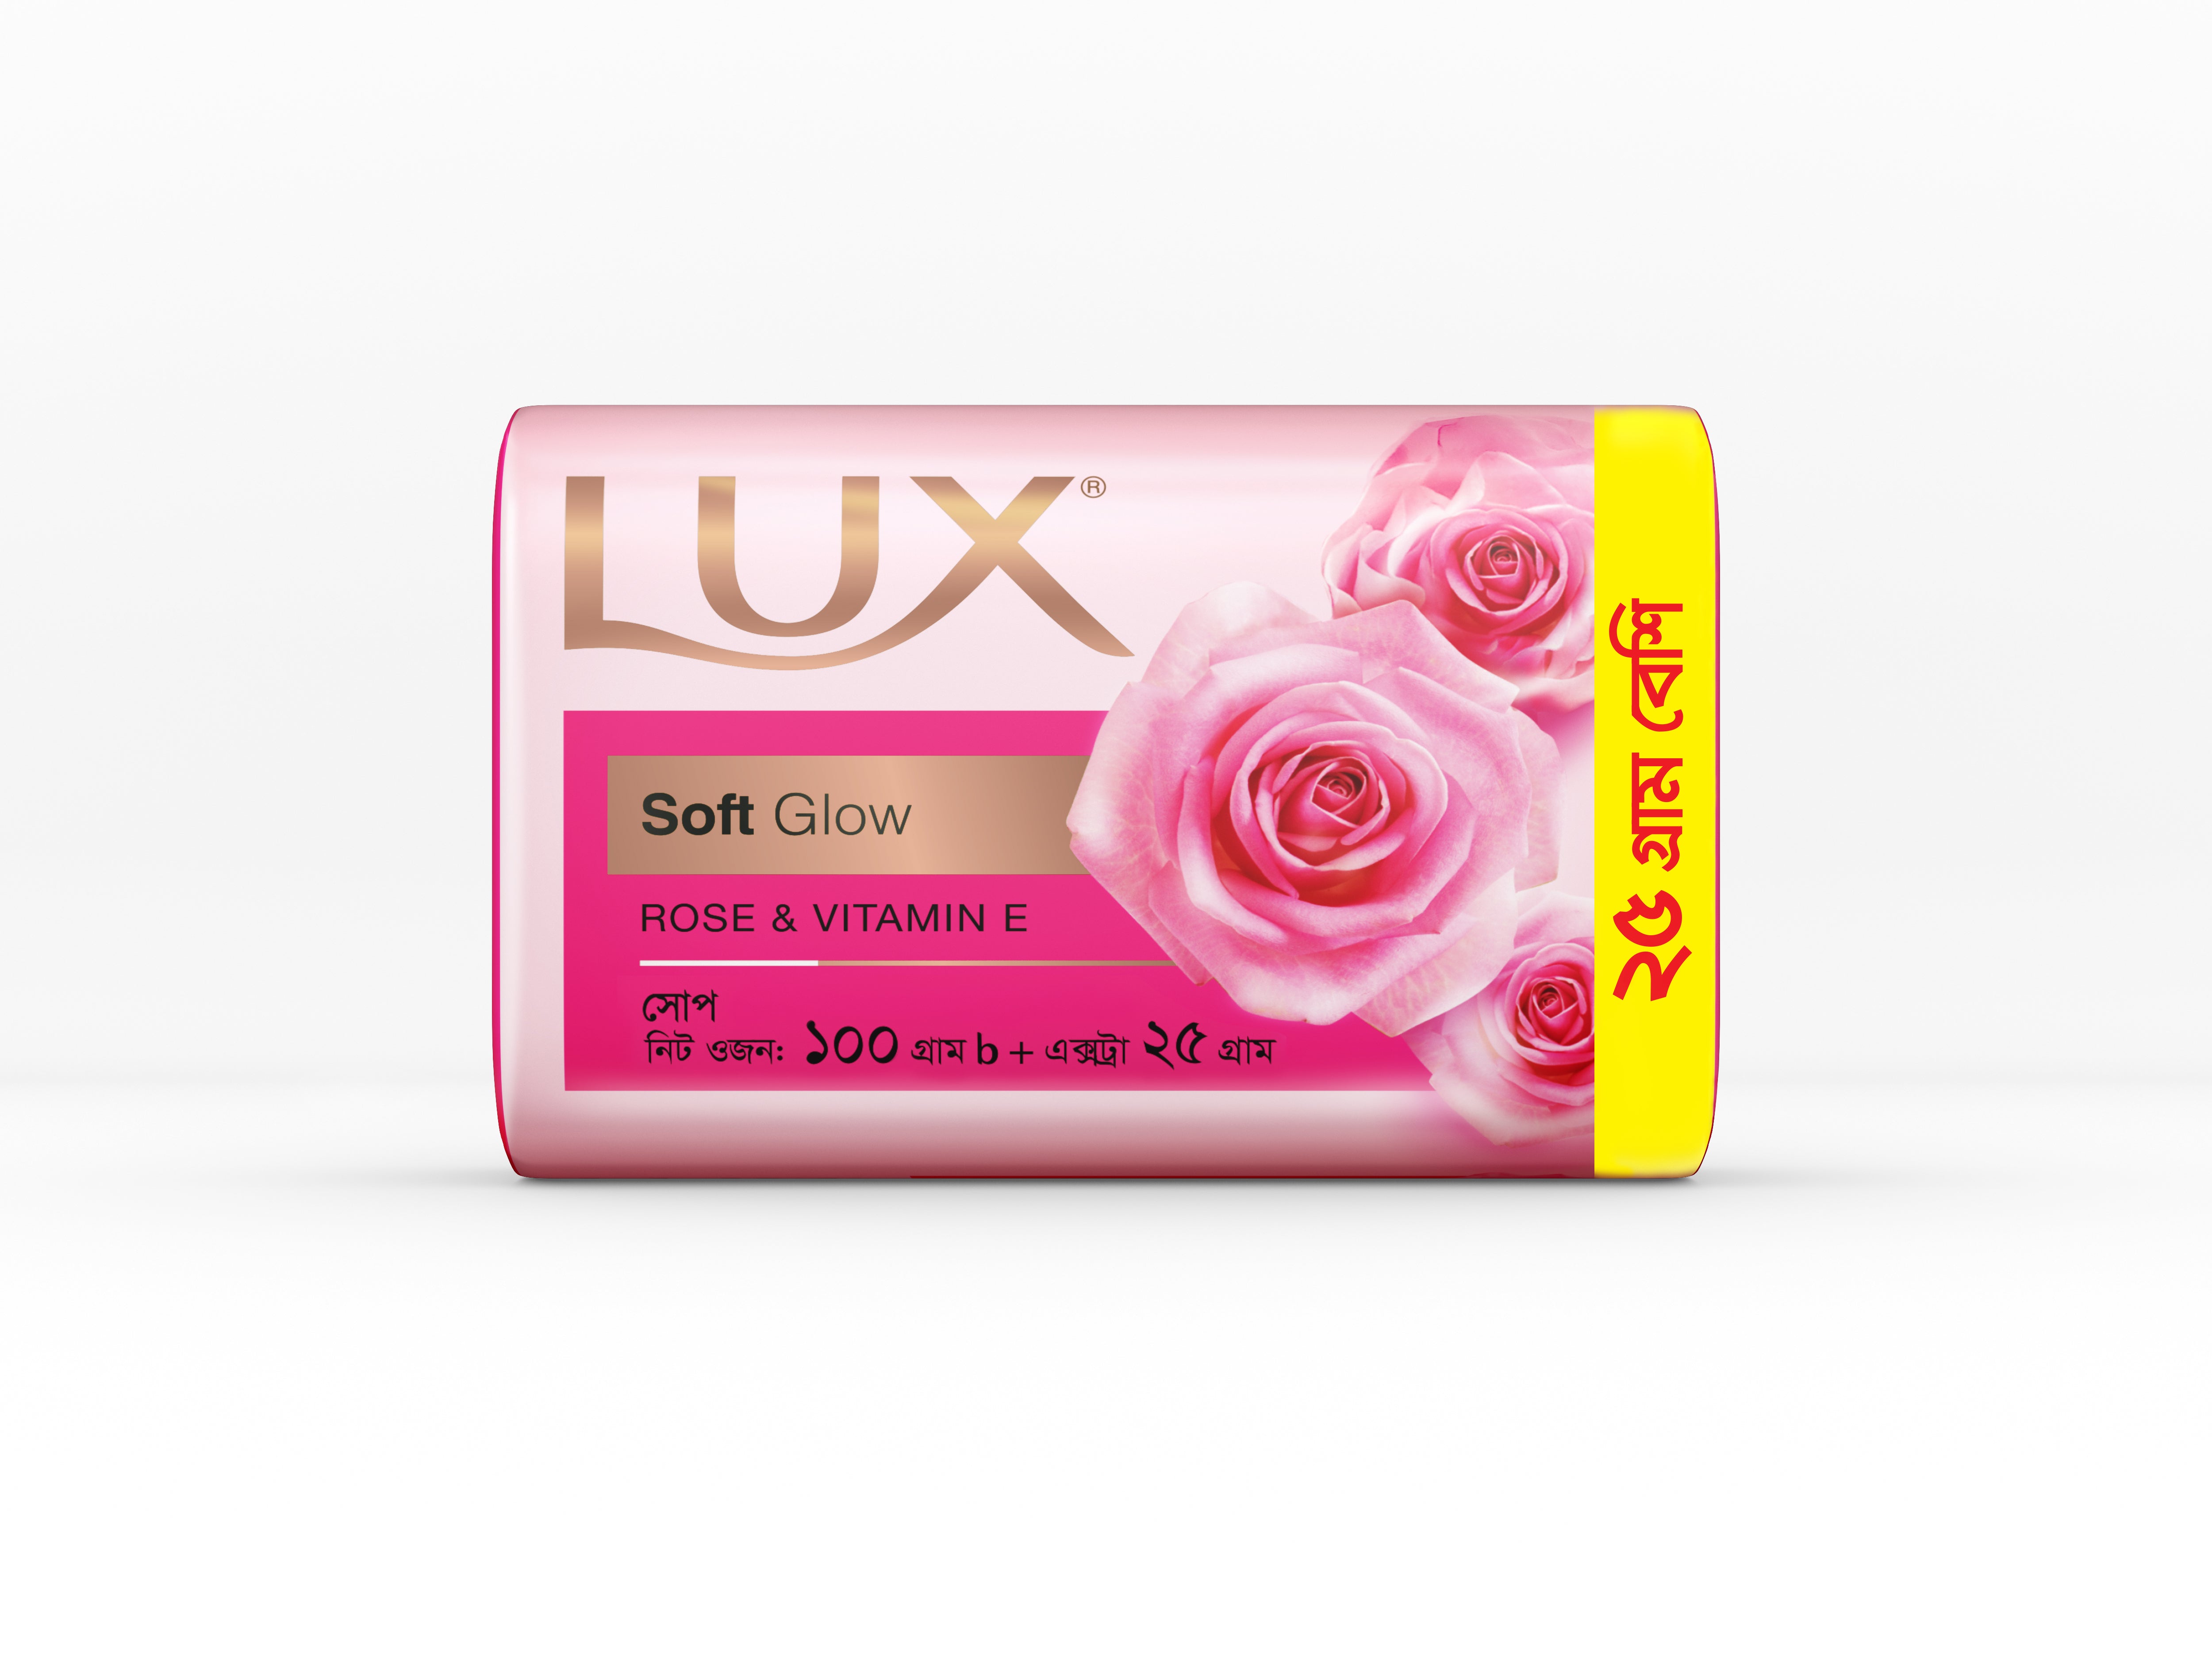 LUX | Unilever